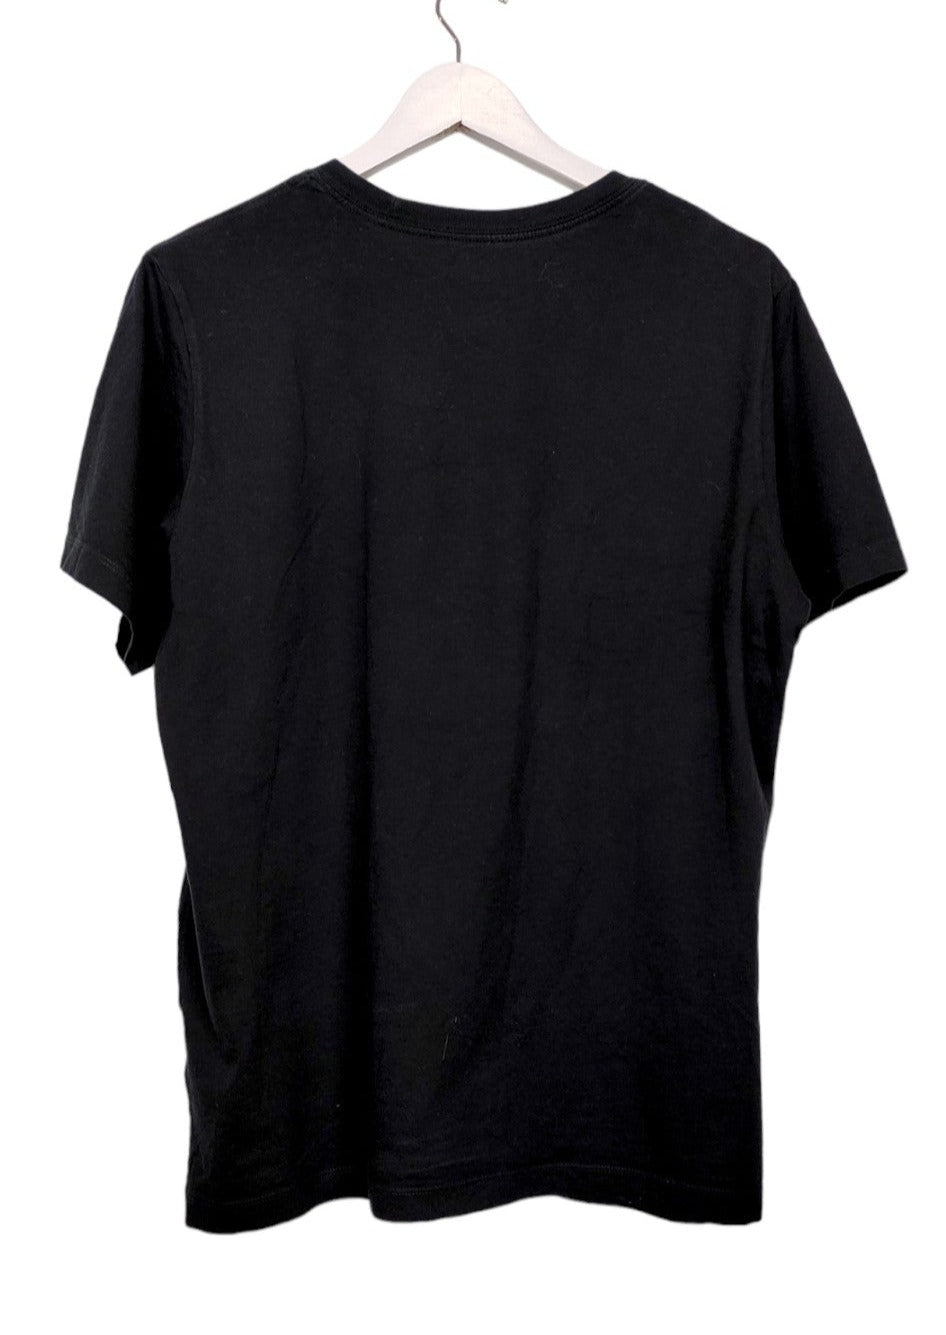 Αθλητική Ανδρική Μπλούζα - T-Shirt NIKE σε Μαύρο χρώμα (Medium)